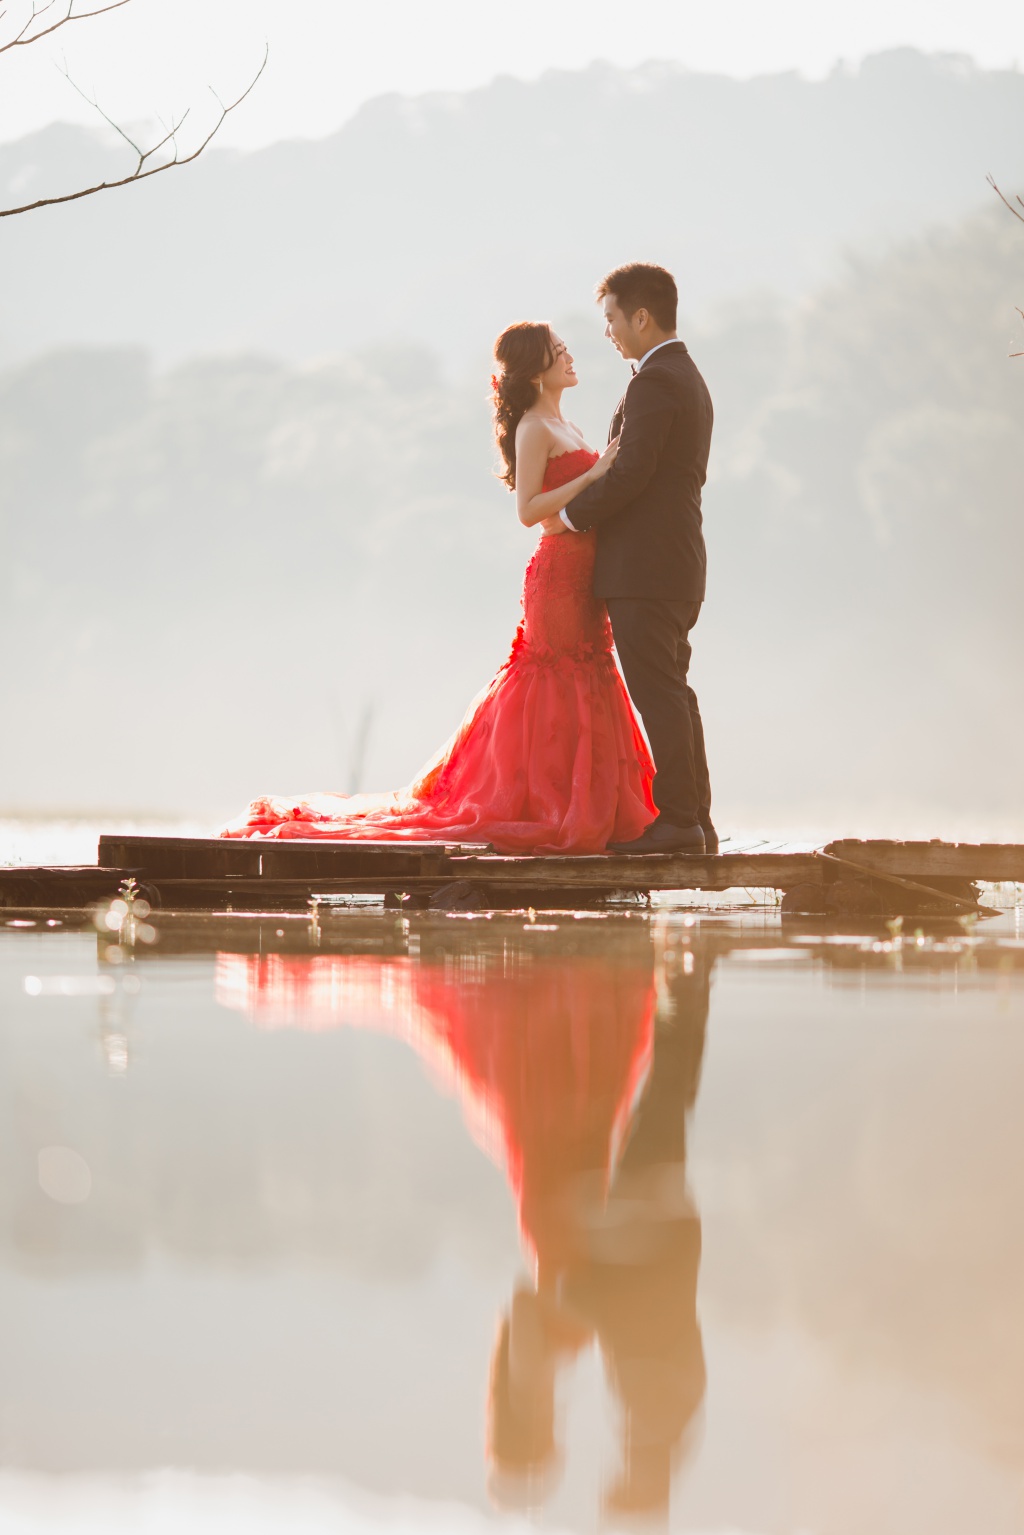 峇里島婚紗拍攝 - Tamblingan湖泊和大石岩石懸崖 by Hendra  on OneThreeOneFour 7